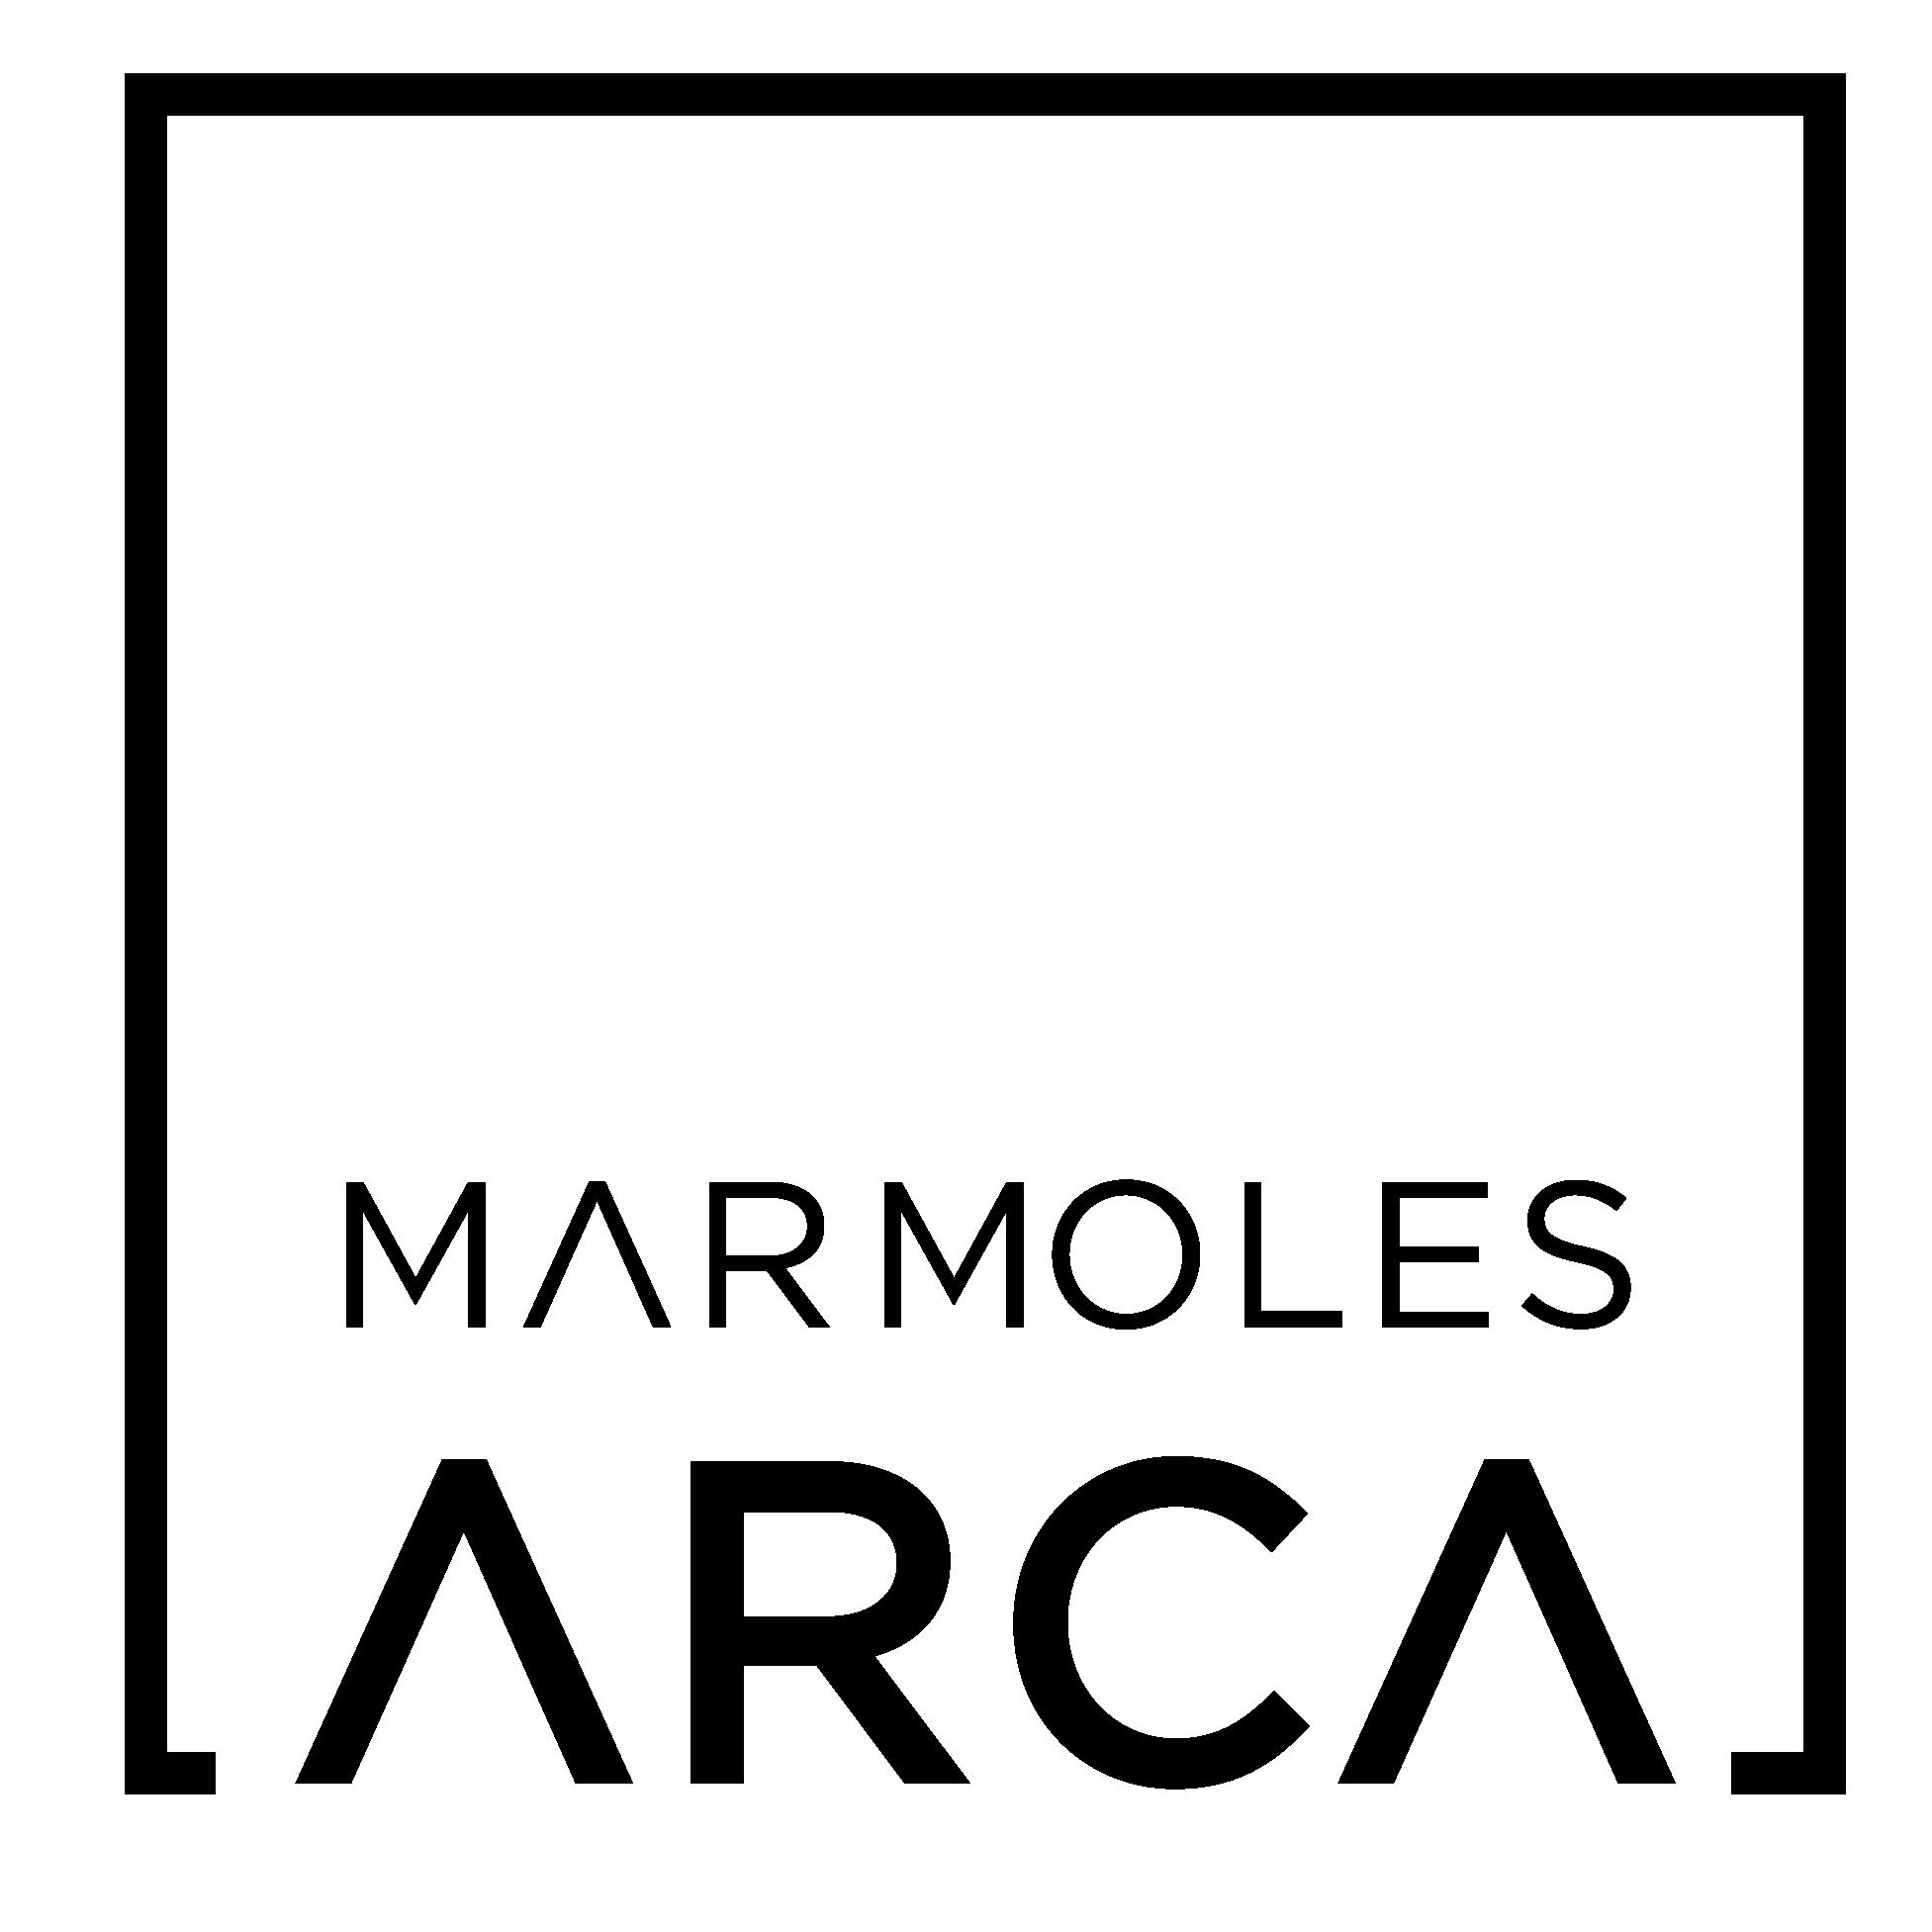 Marmoles Arca